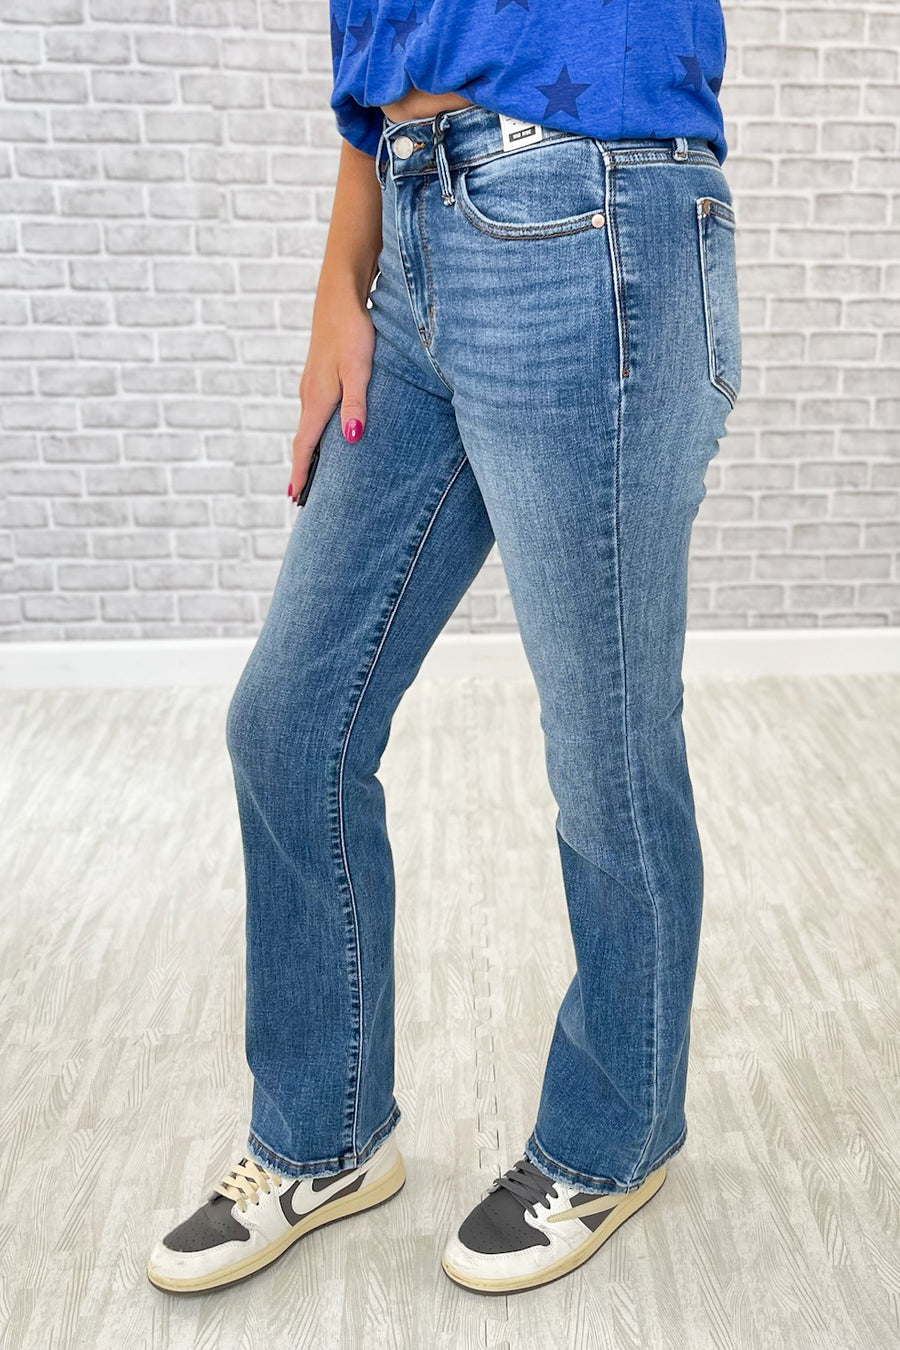 Women's Dressy Shorts, Slim Fit Jeans | Unique Boutique Clothing ...